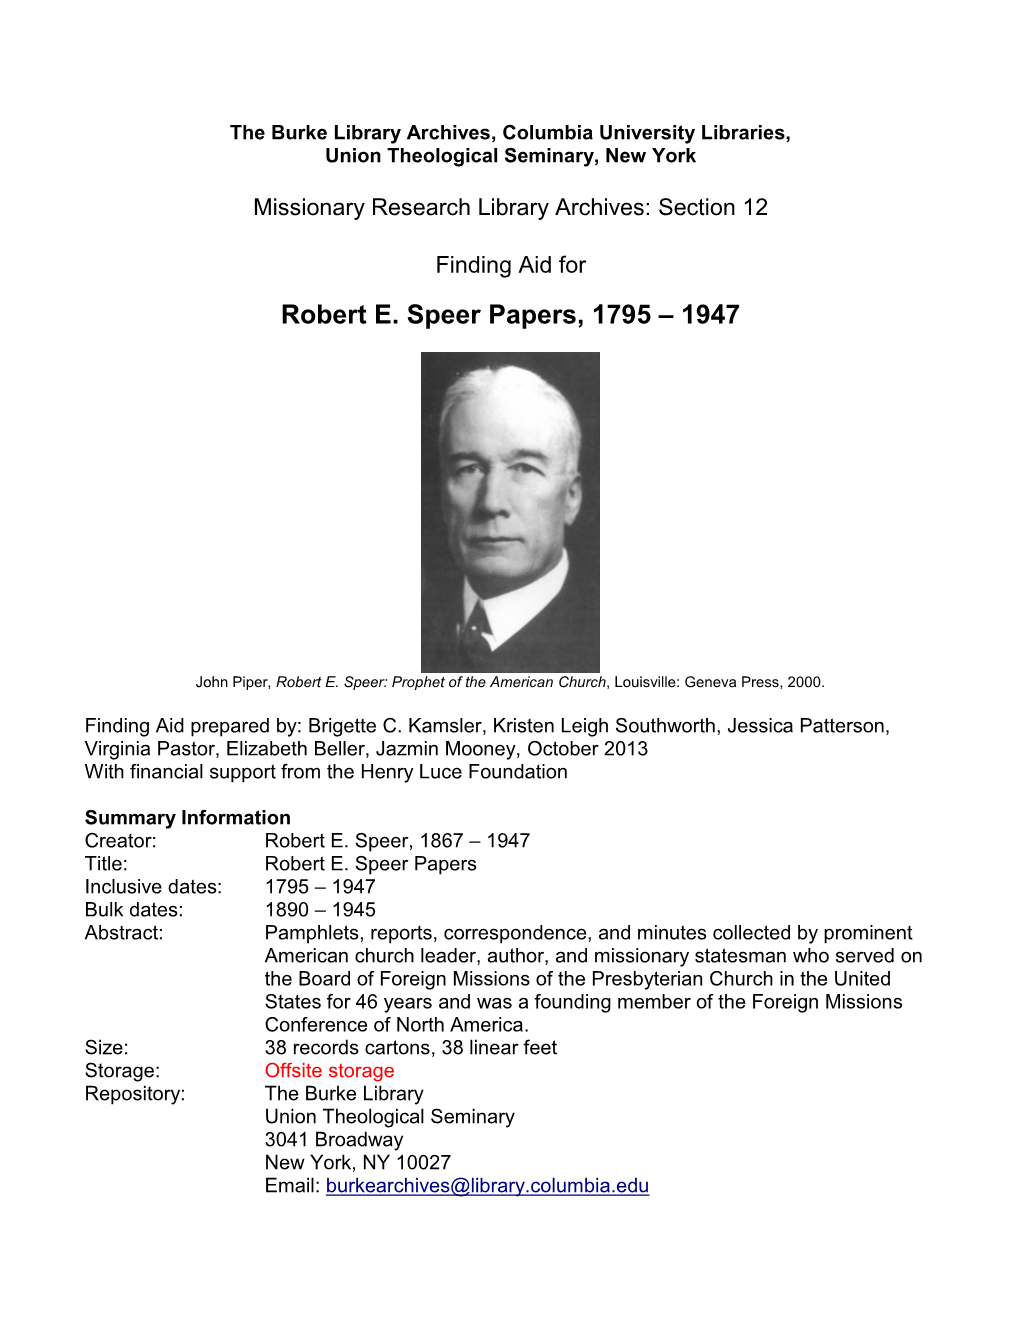 Robert Speer Papers, 1795-1947